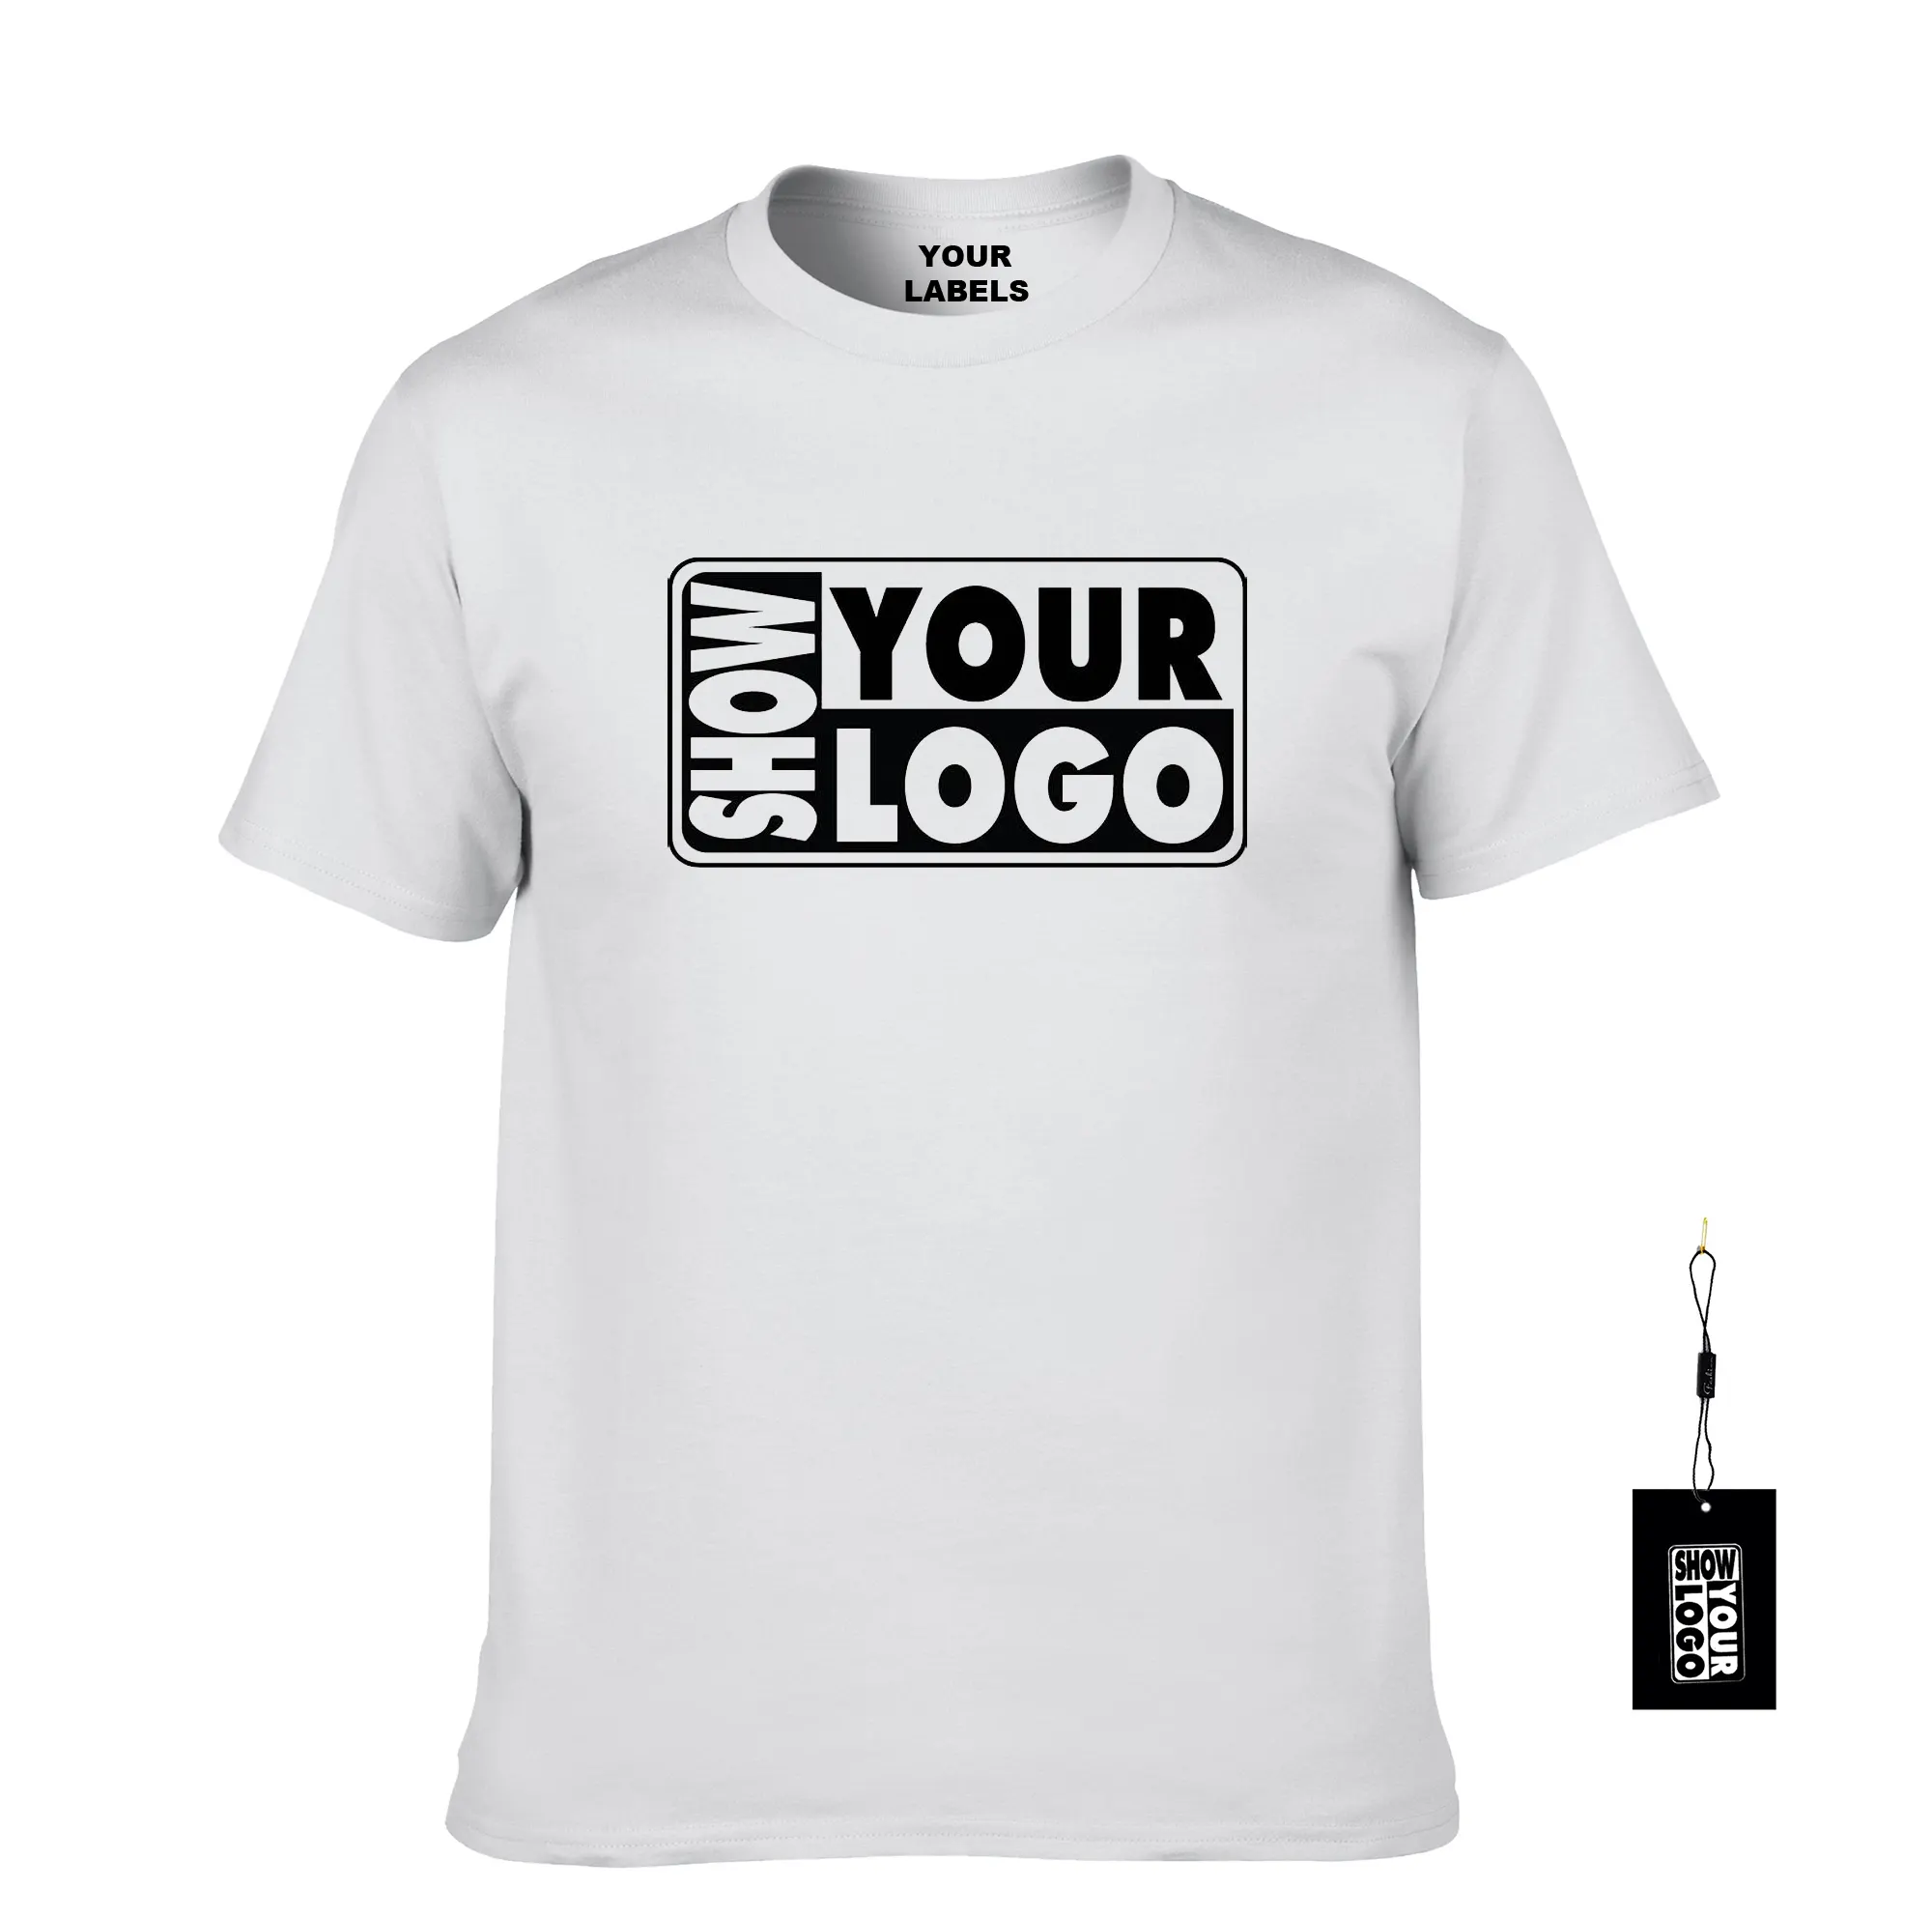 Envío gratuito alta calidad mens t camisa 100% algodón camiseta de impresión personalizada t camisa marca camiseta con su logotipo o diseño